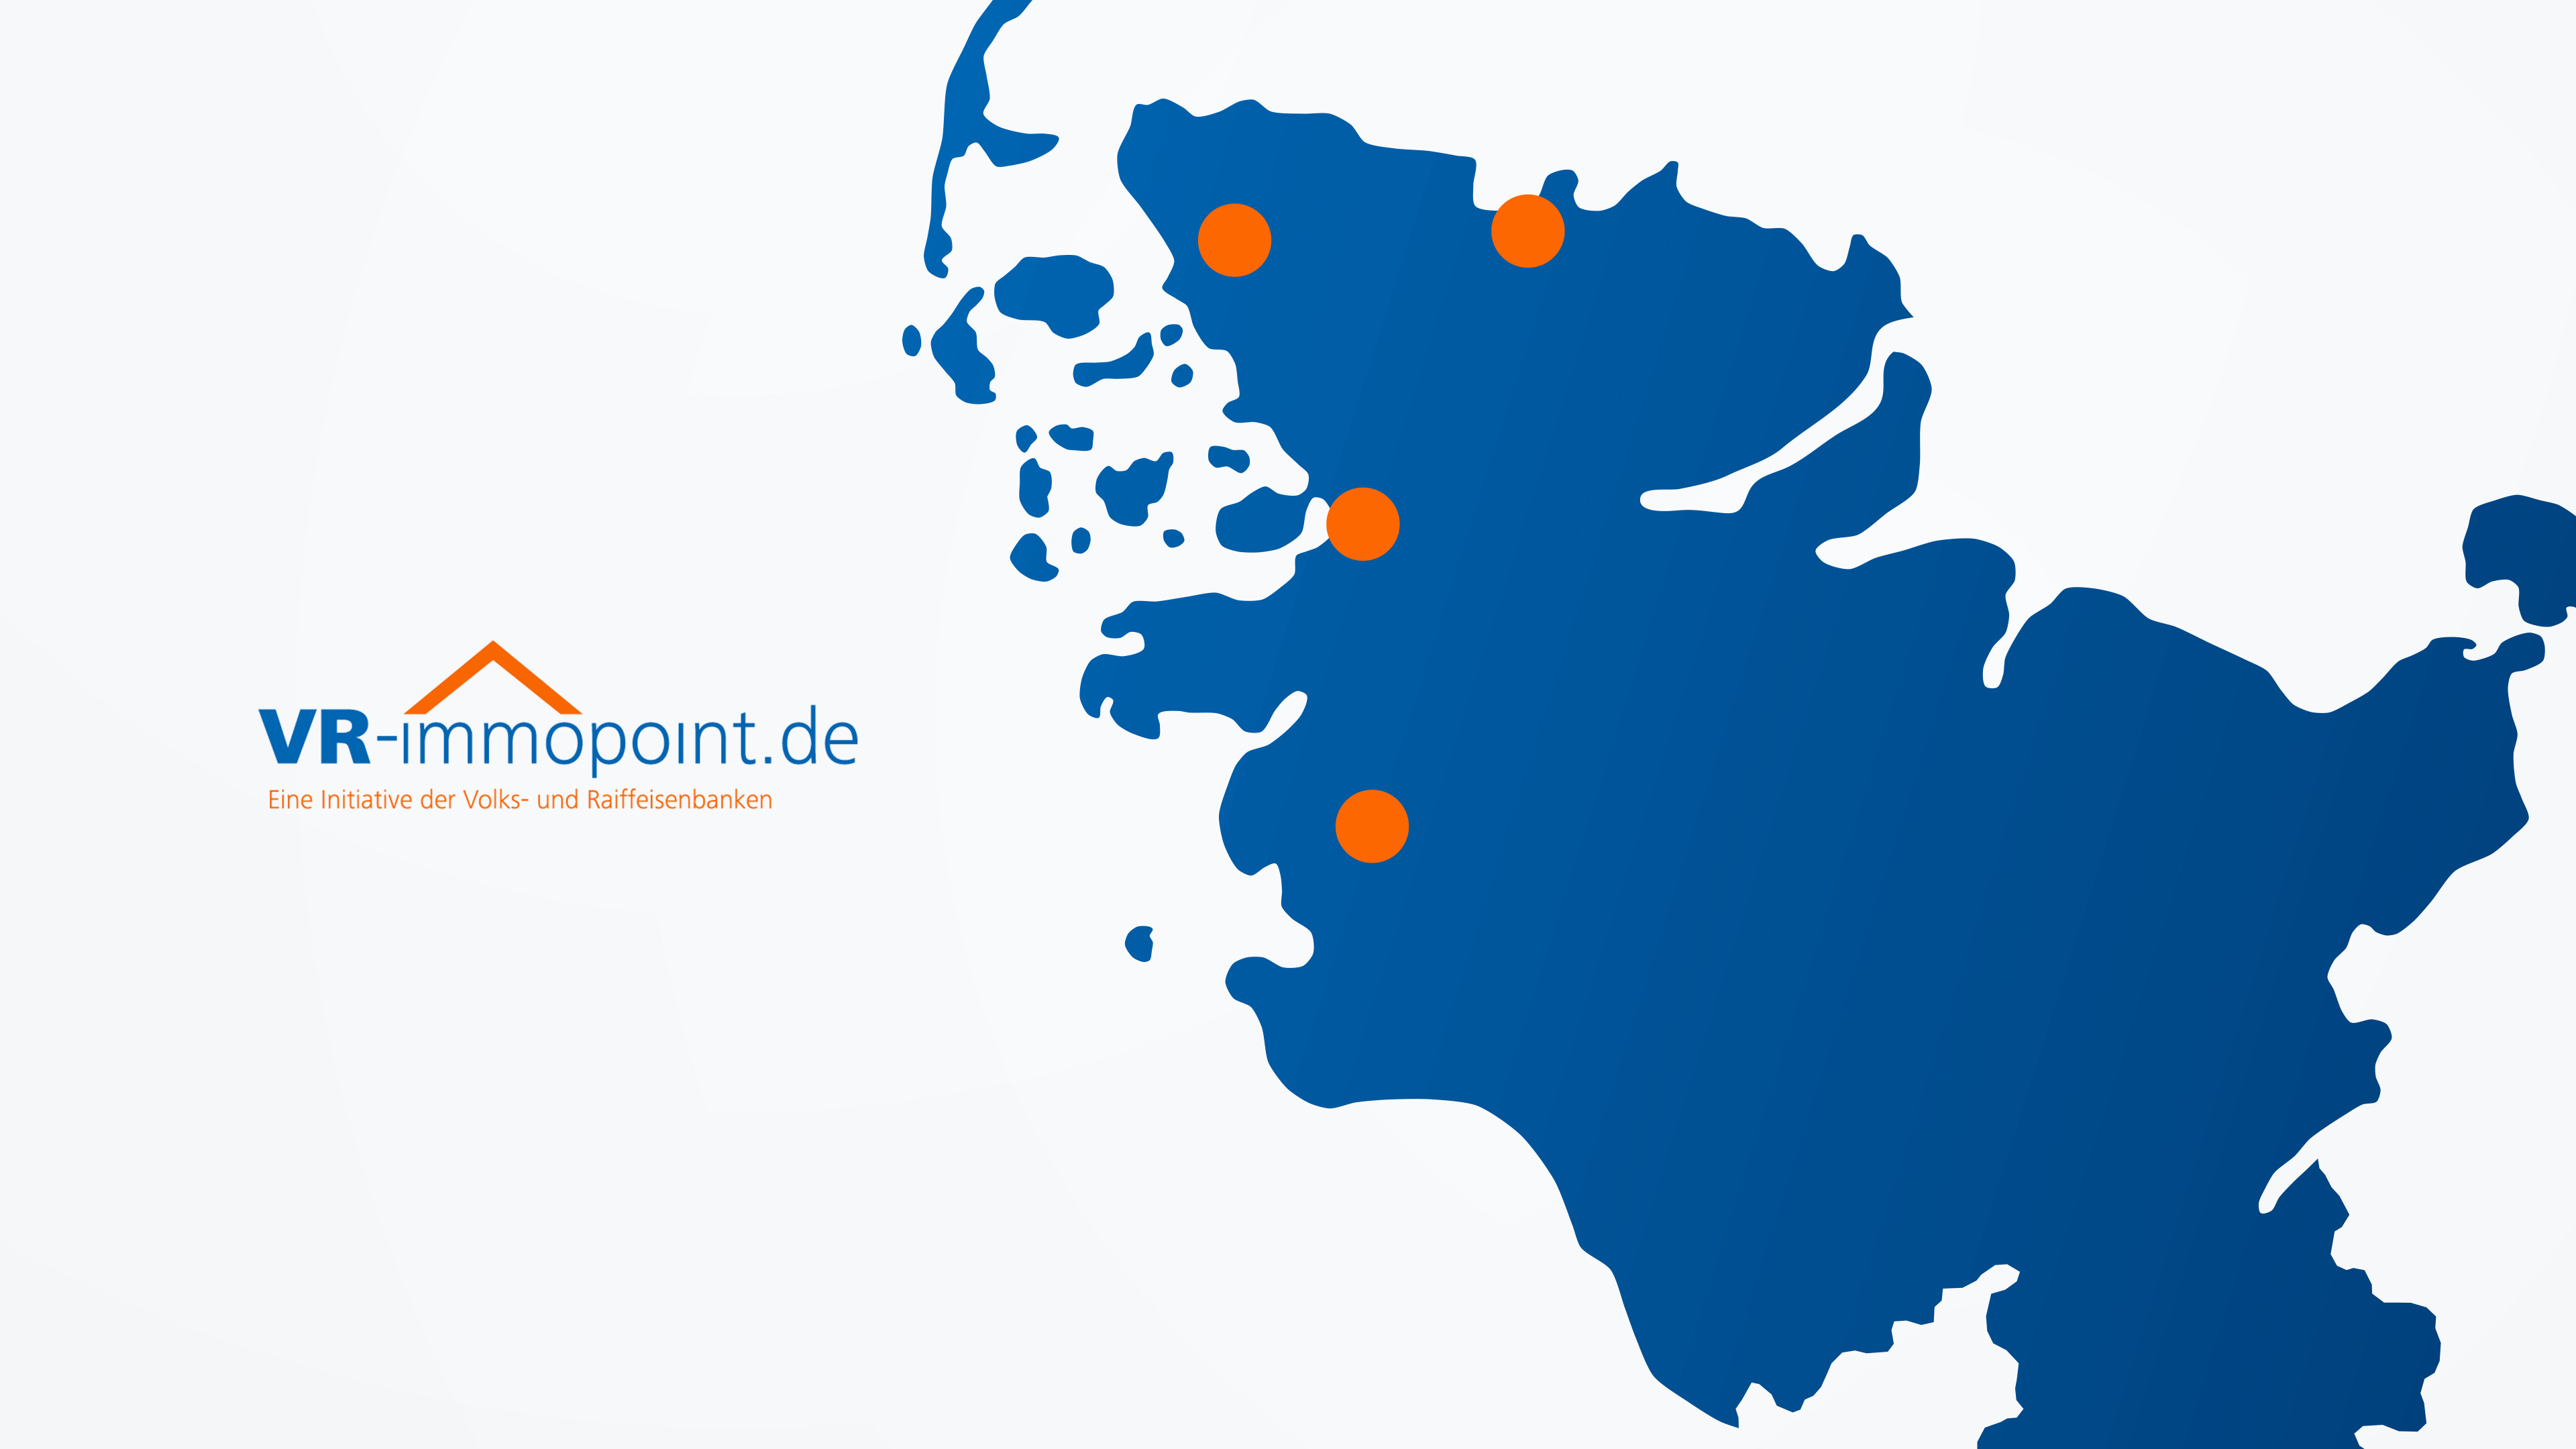 Landkarte von Schleswig Holstein mit markierten Standorten der VR Bank